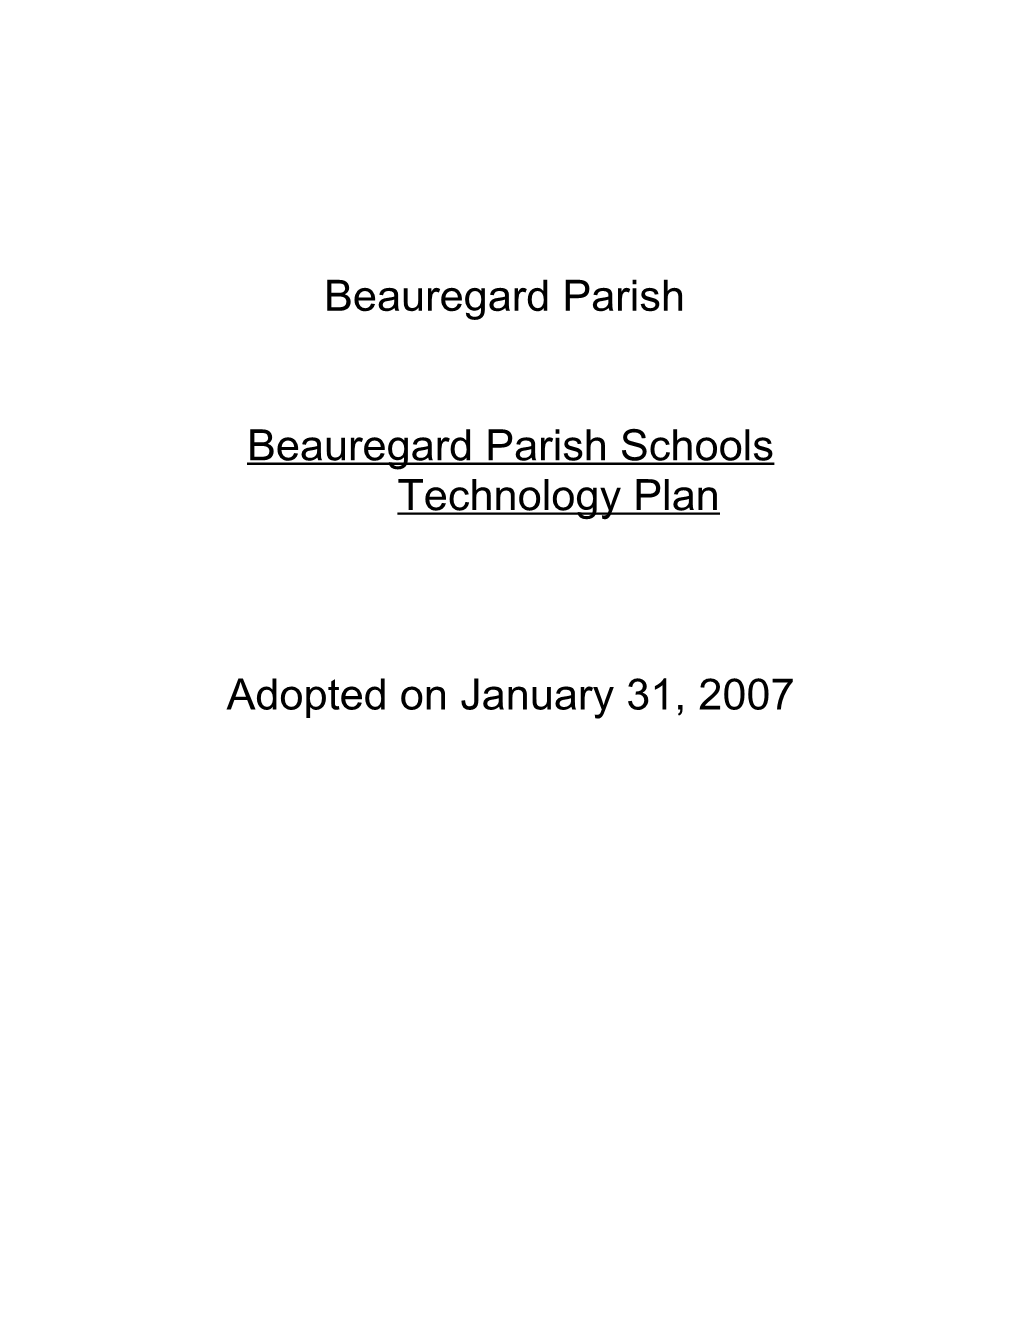 Louisiana State Technology Plan